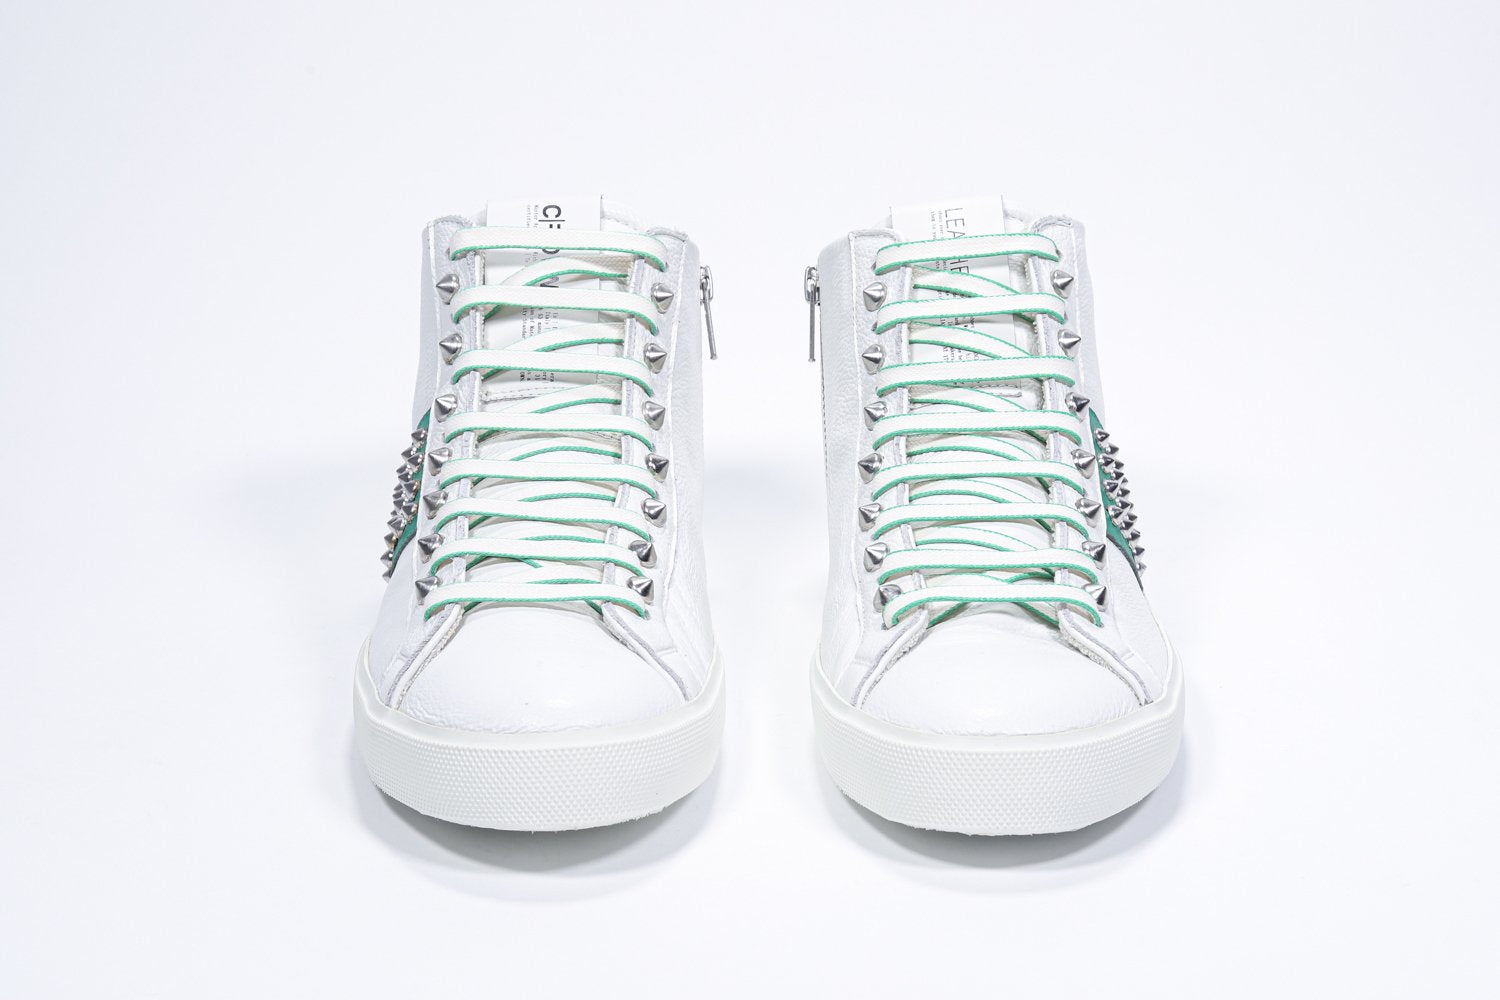 Vue de face du modèle mid top blanc et vert sneaker. Tige en cuir avec clous, fermeture à glissière interne et semelle en caoutchouc blanc.